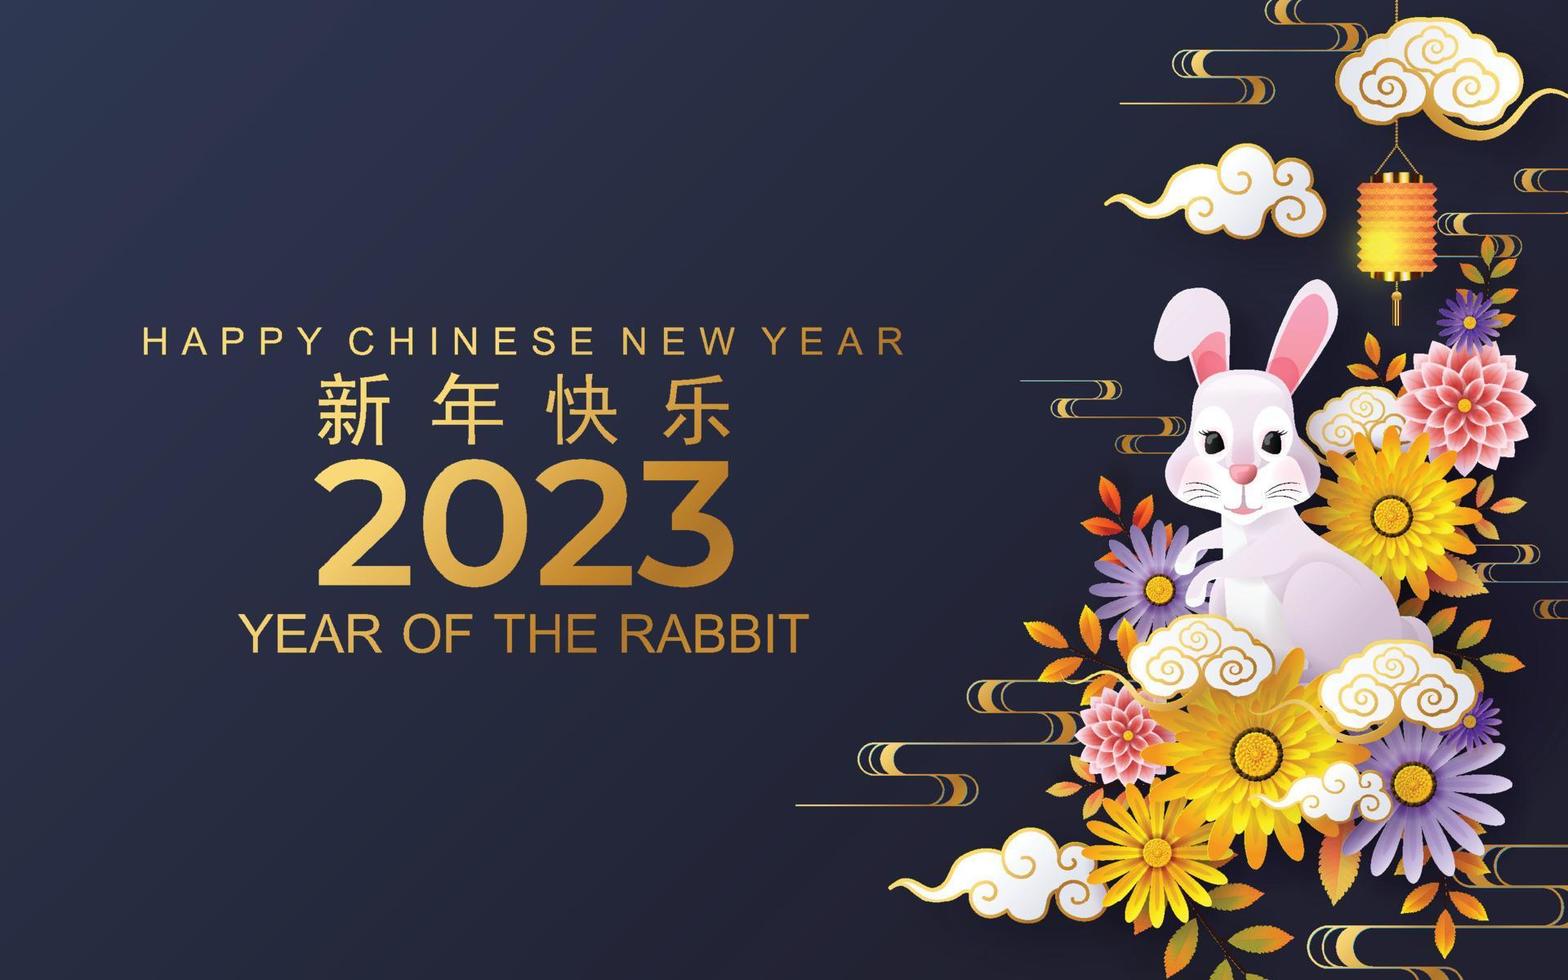 felice anno nuovo cinese 2023 gong xi fa cai anno del coniglio, lepri, coniglietto segno zodiacale con fiore, lanterna, elementi asiatici stile taglio carta oro su sfondo colorato. vettore